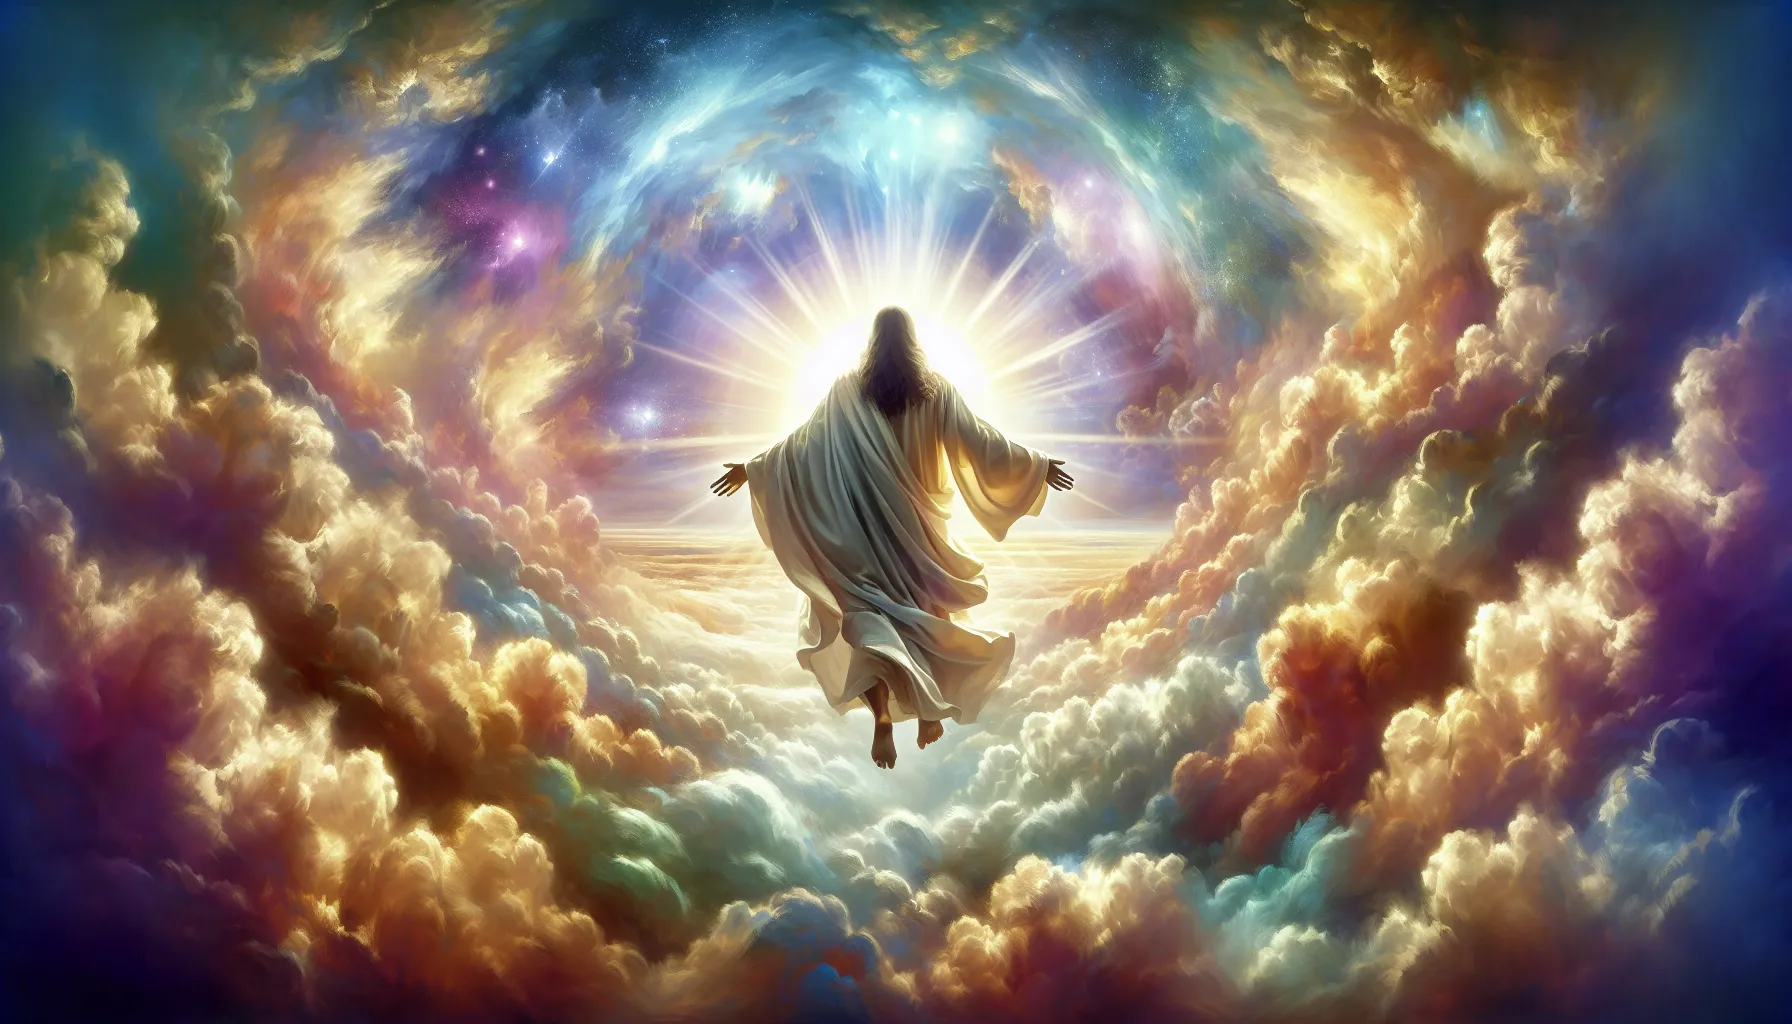 Representación artística de Jesús regresando en las nubes según Apocalipsis 1:7